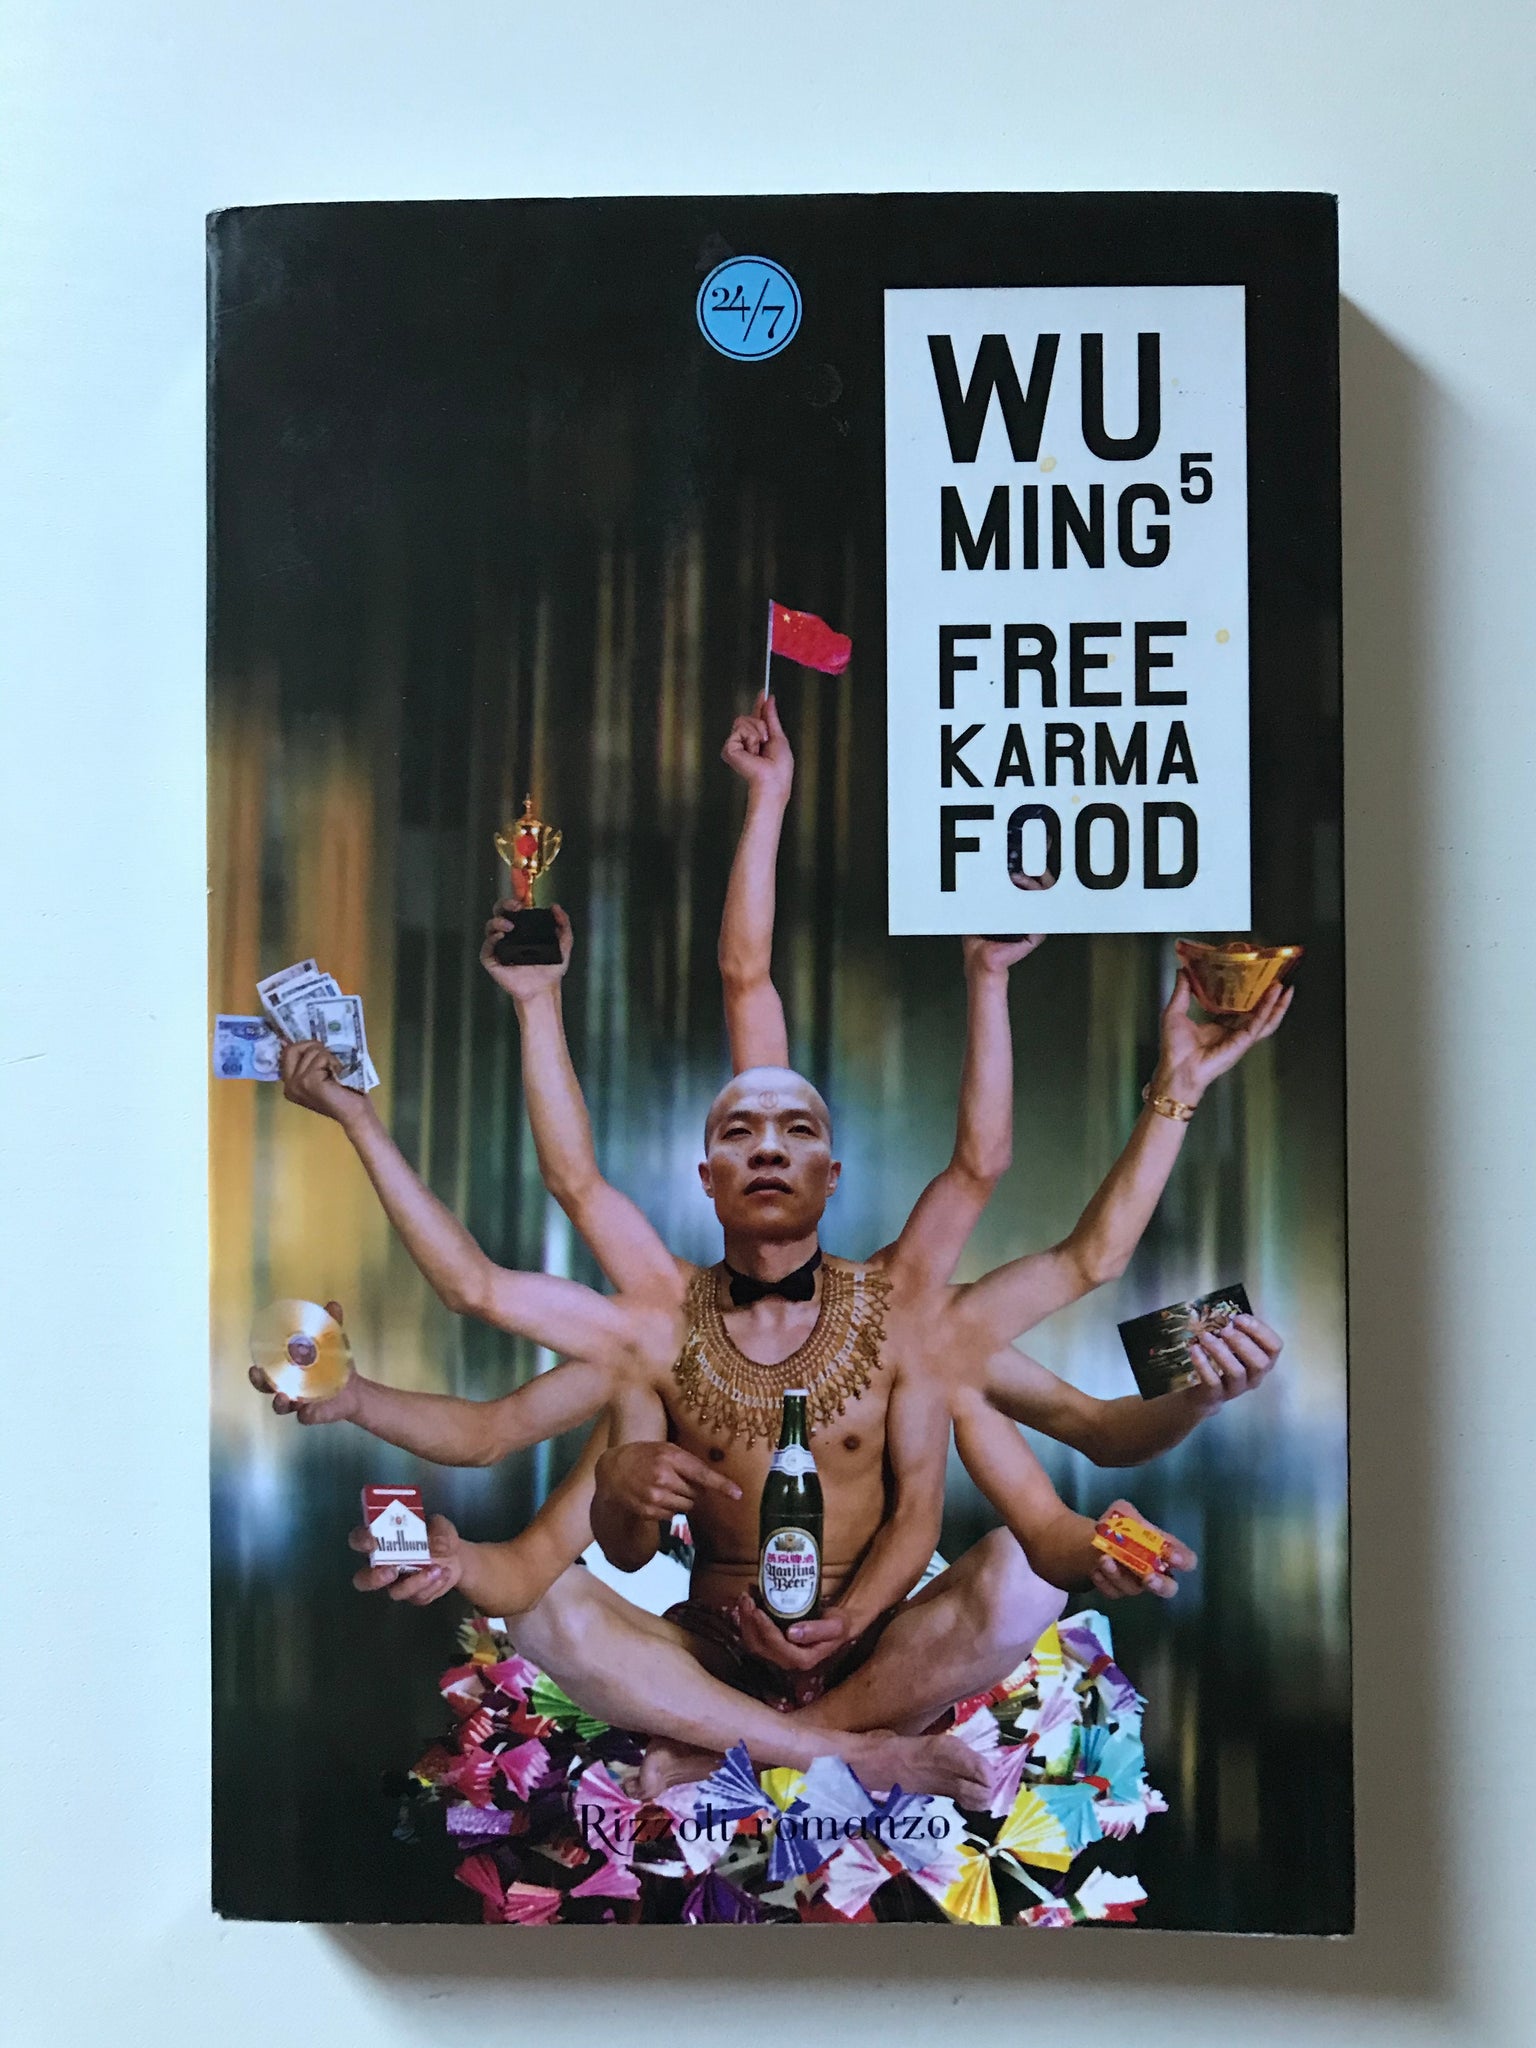 Wu Ming5 - Free Karma Food